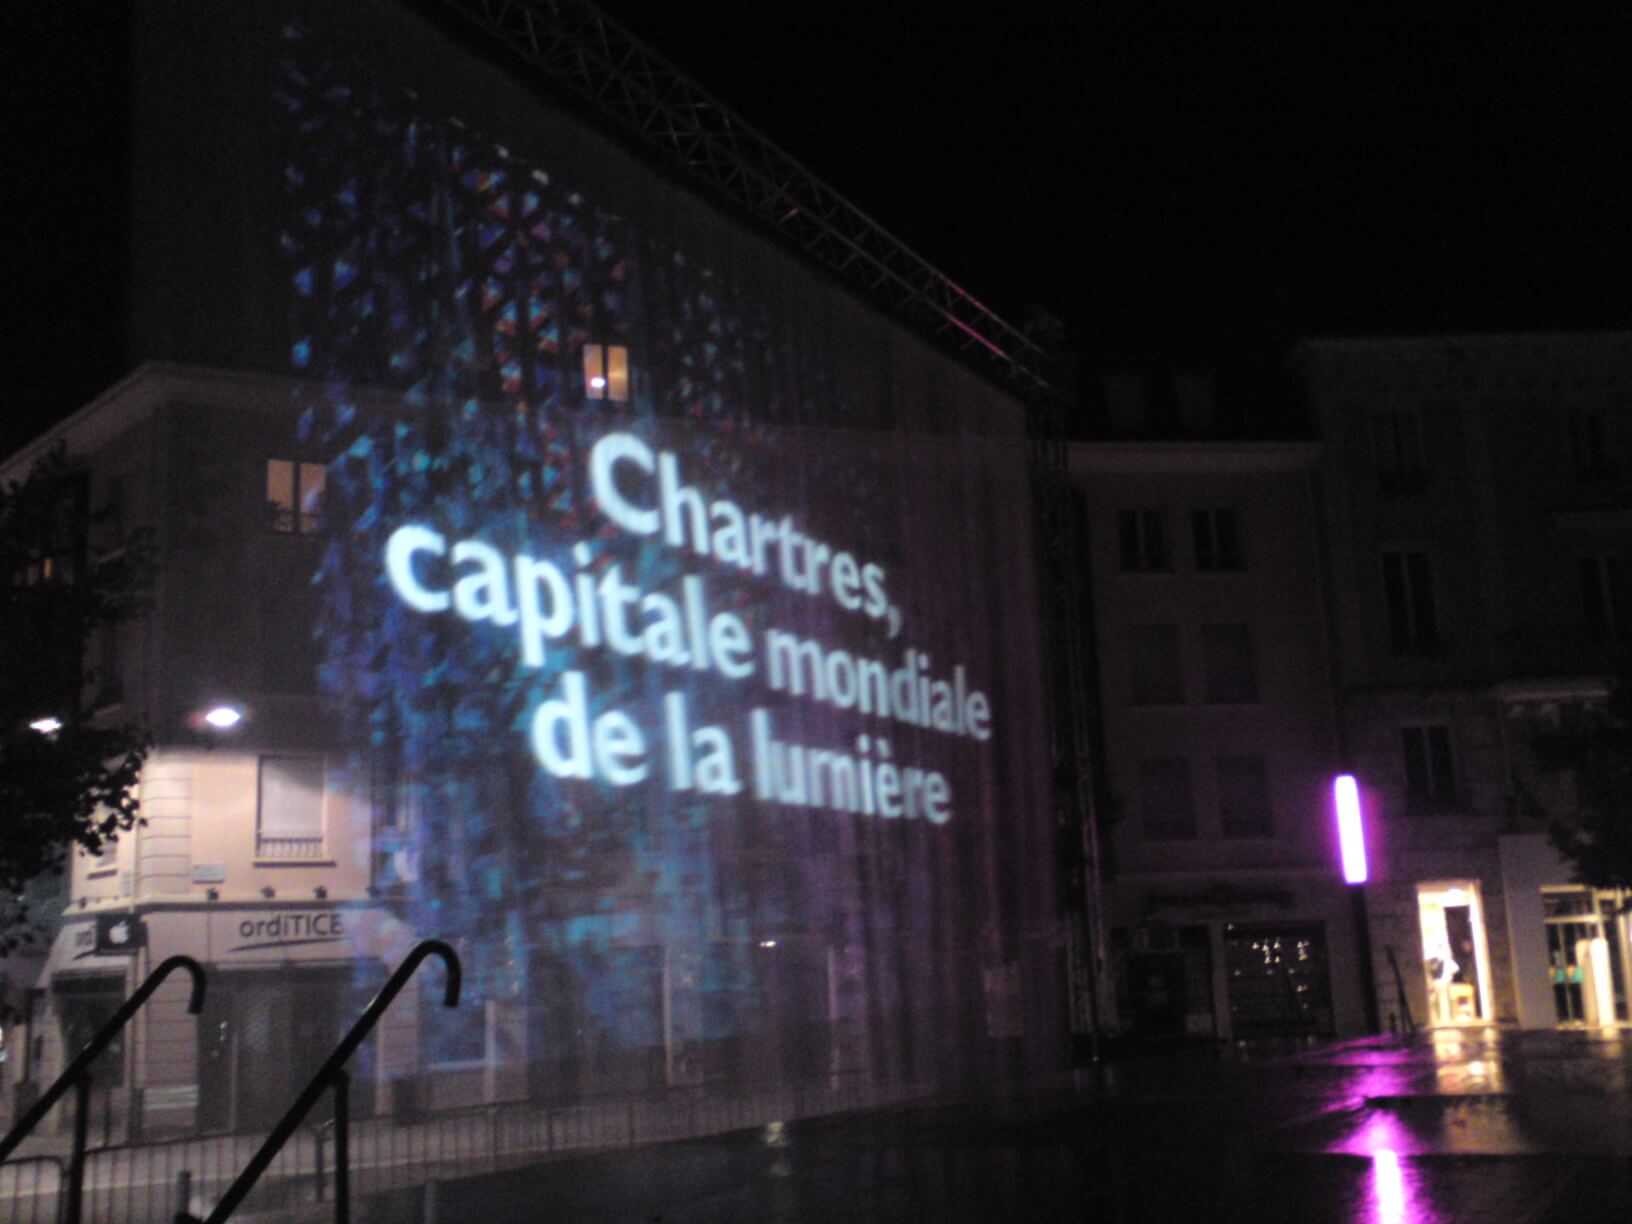 Atlantid - Chartres, capitale mondiale de la lumière